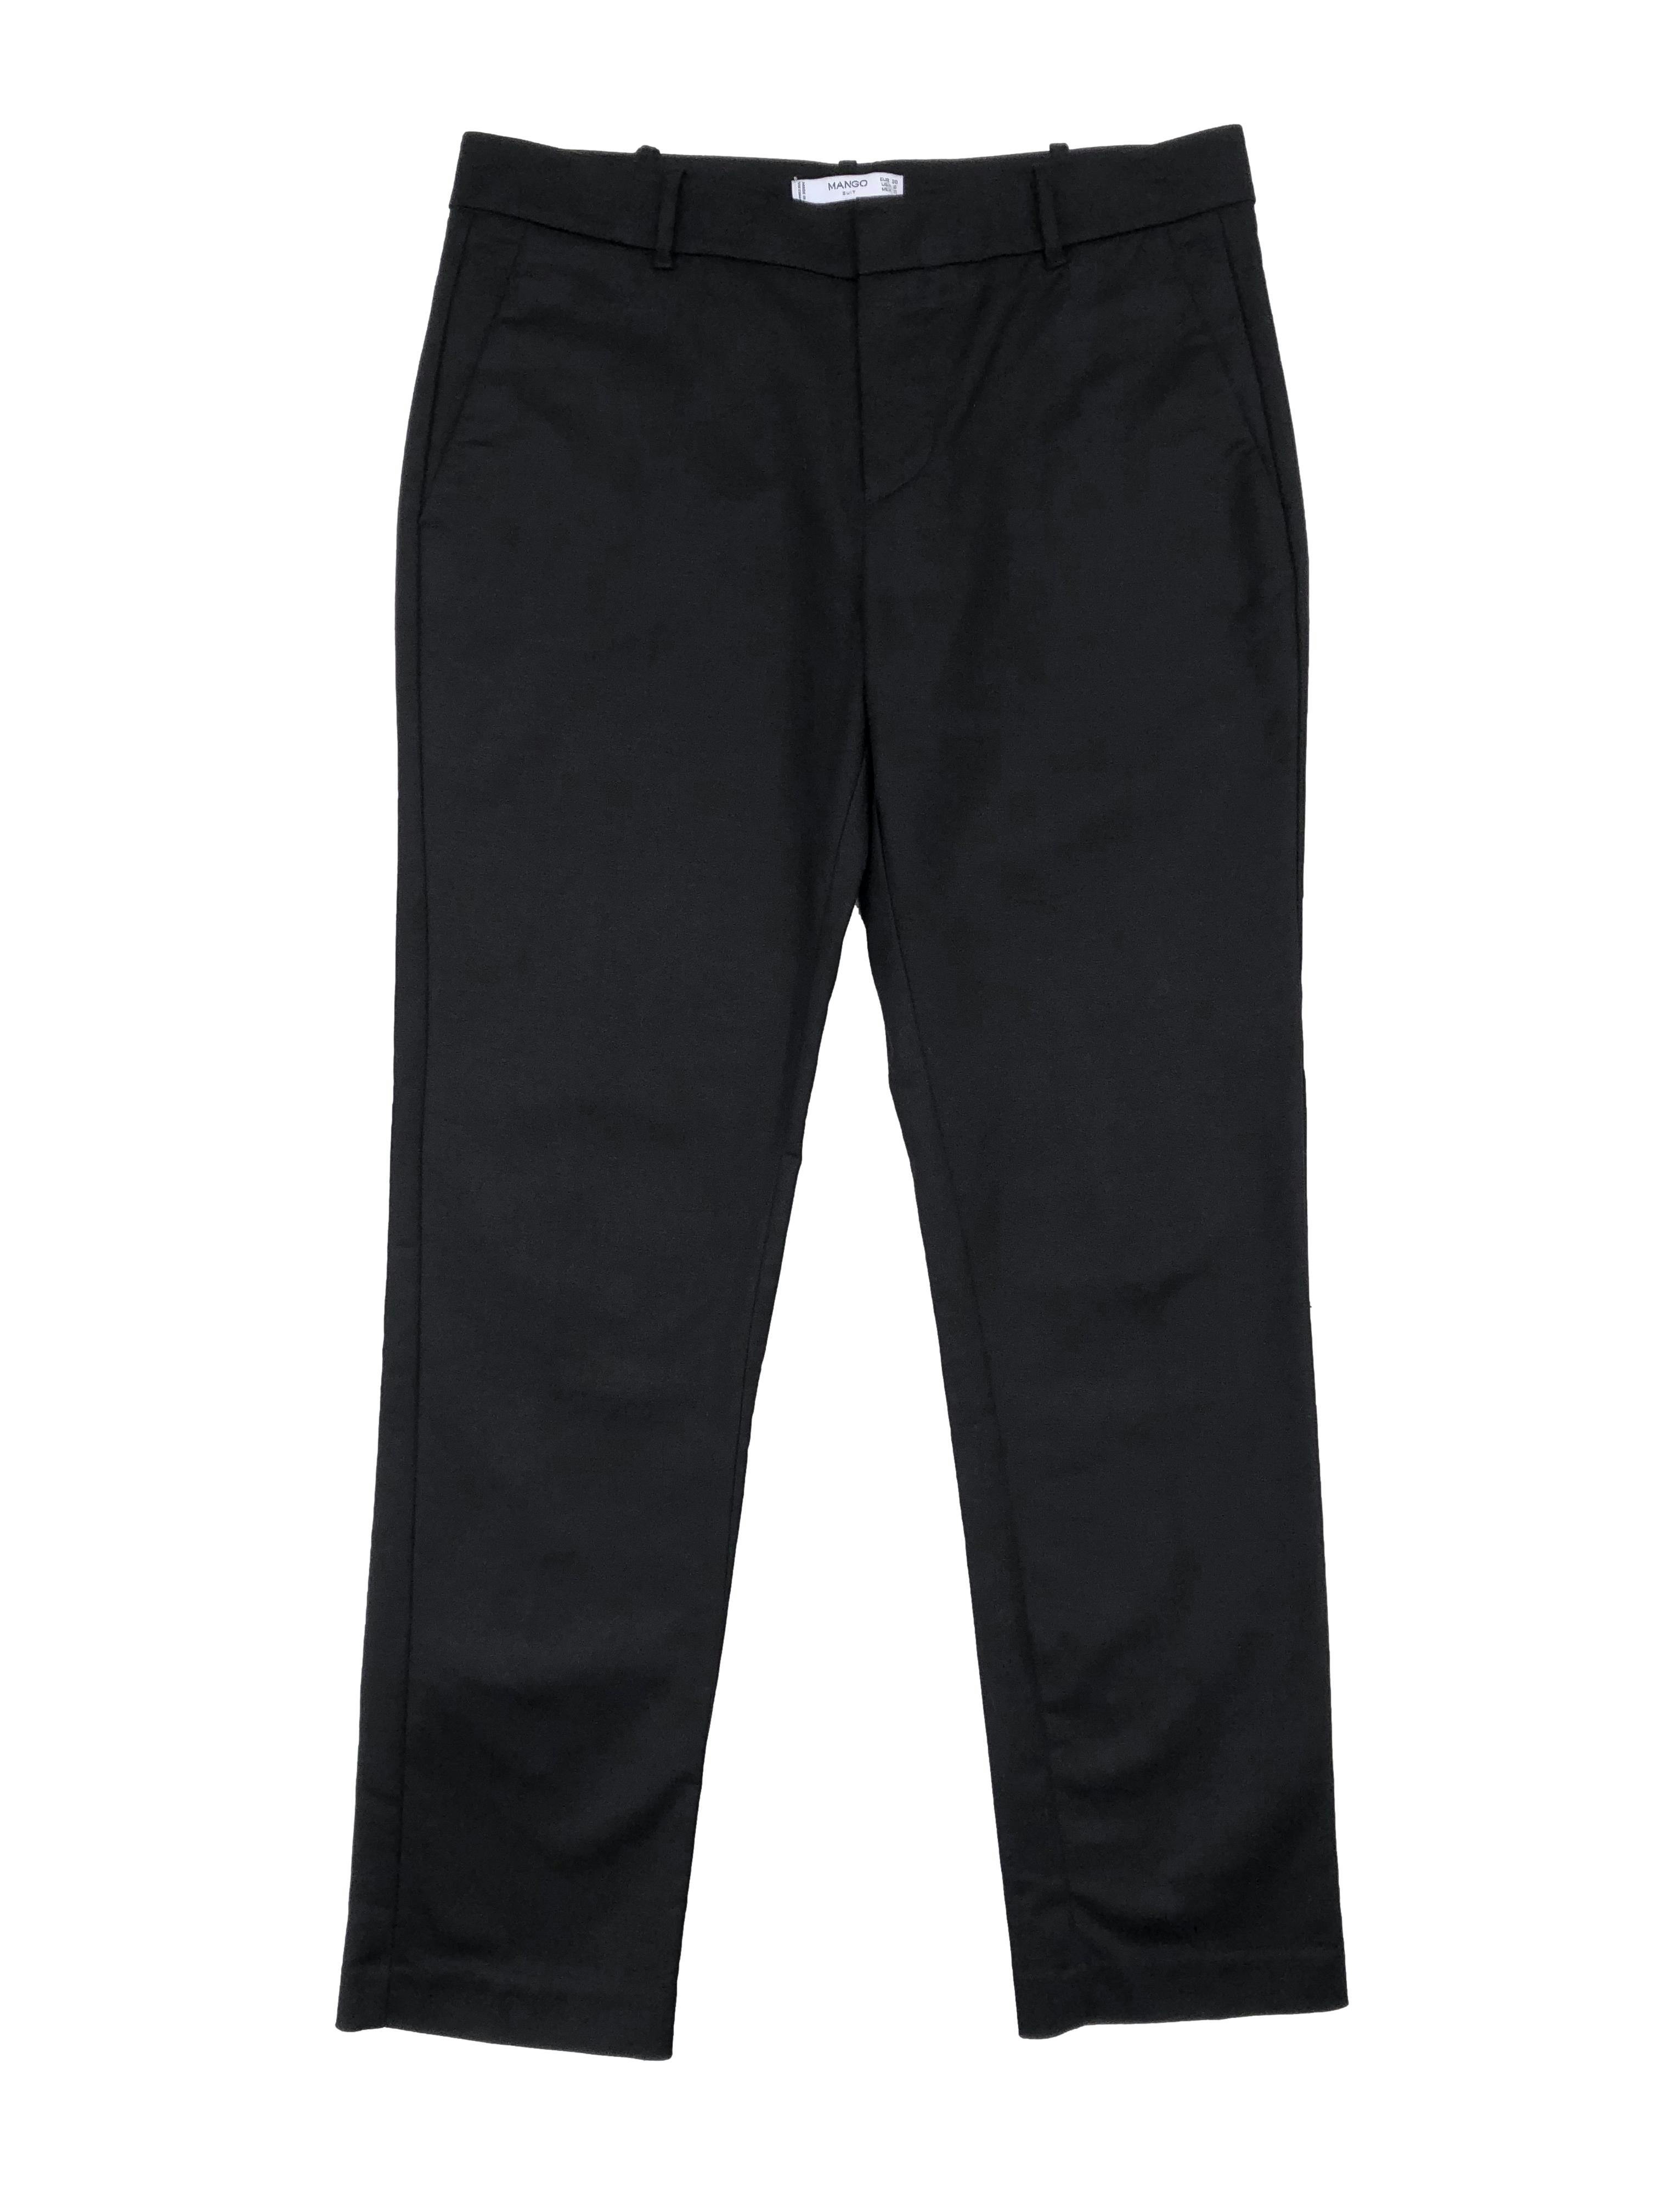 Pantalón Mango negro de vestir, corte slim, 97% algodón. Cintura 80cm Tiro 24cm Largo 95cm